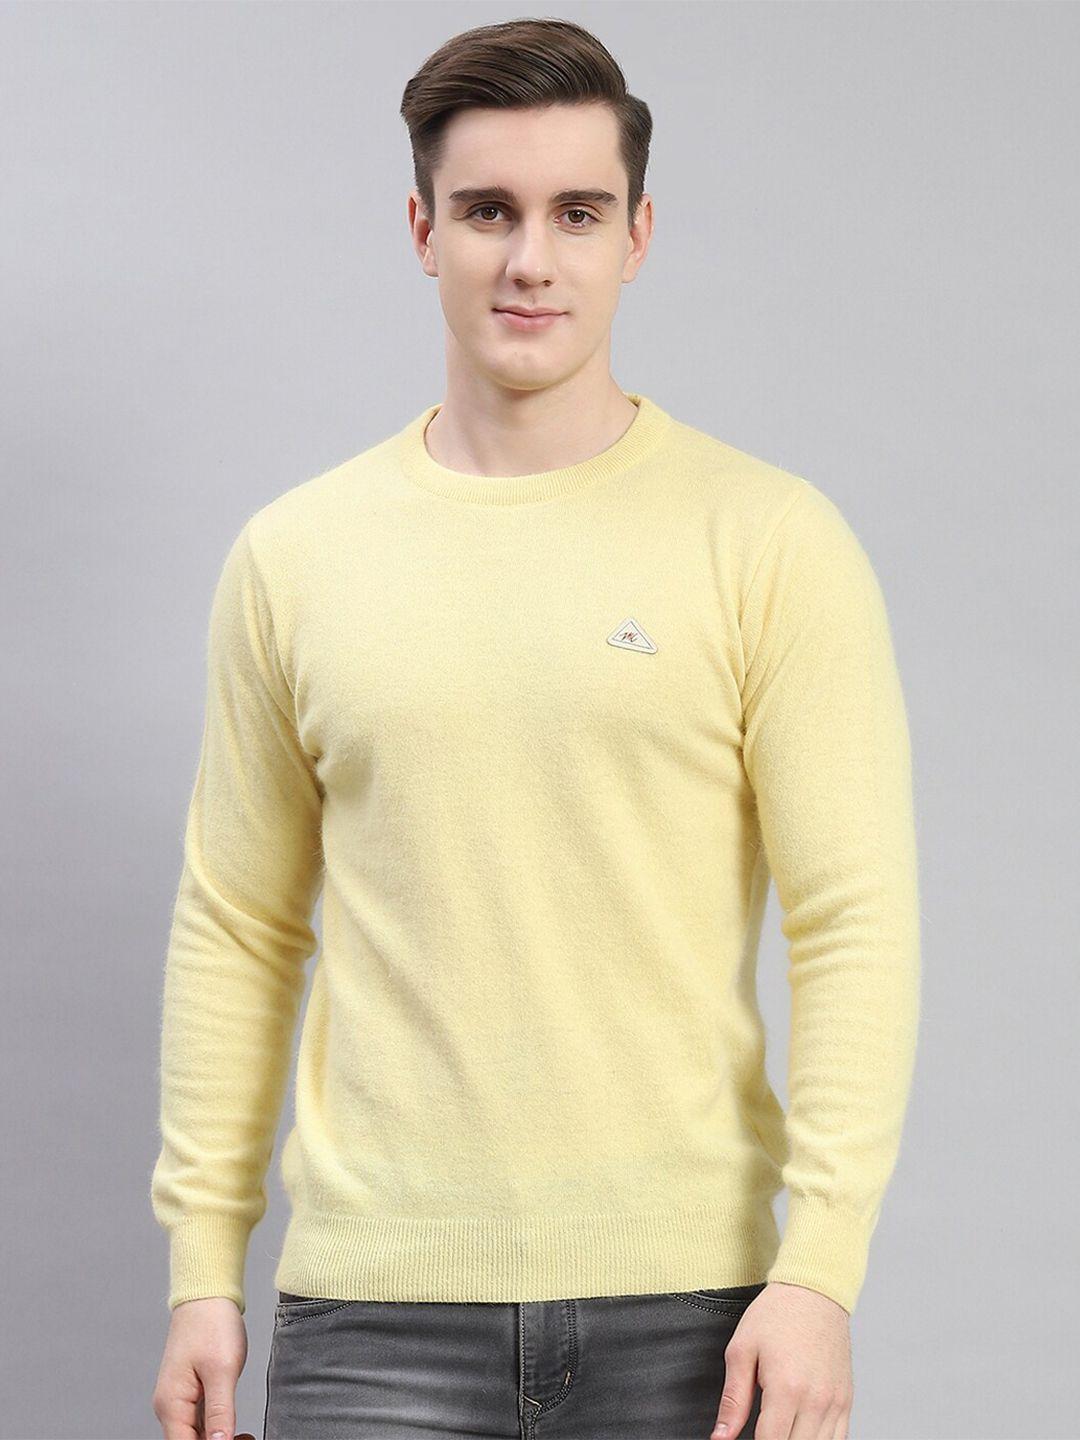 monte-carlo-round-neck-woollen-pullover-sweater